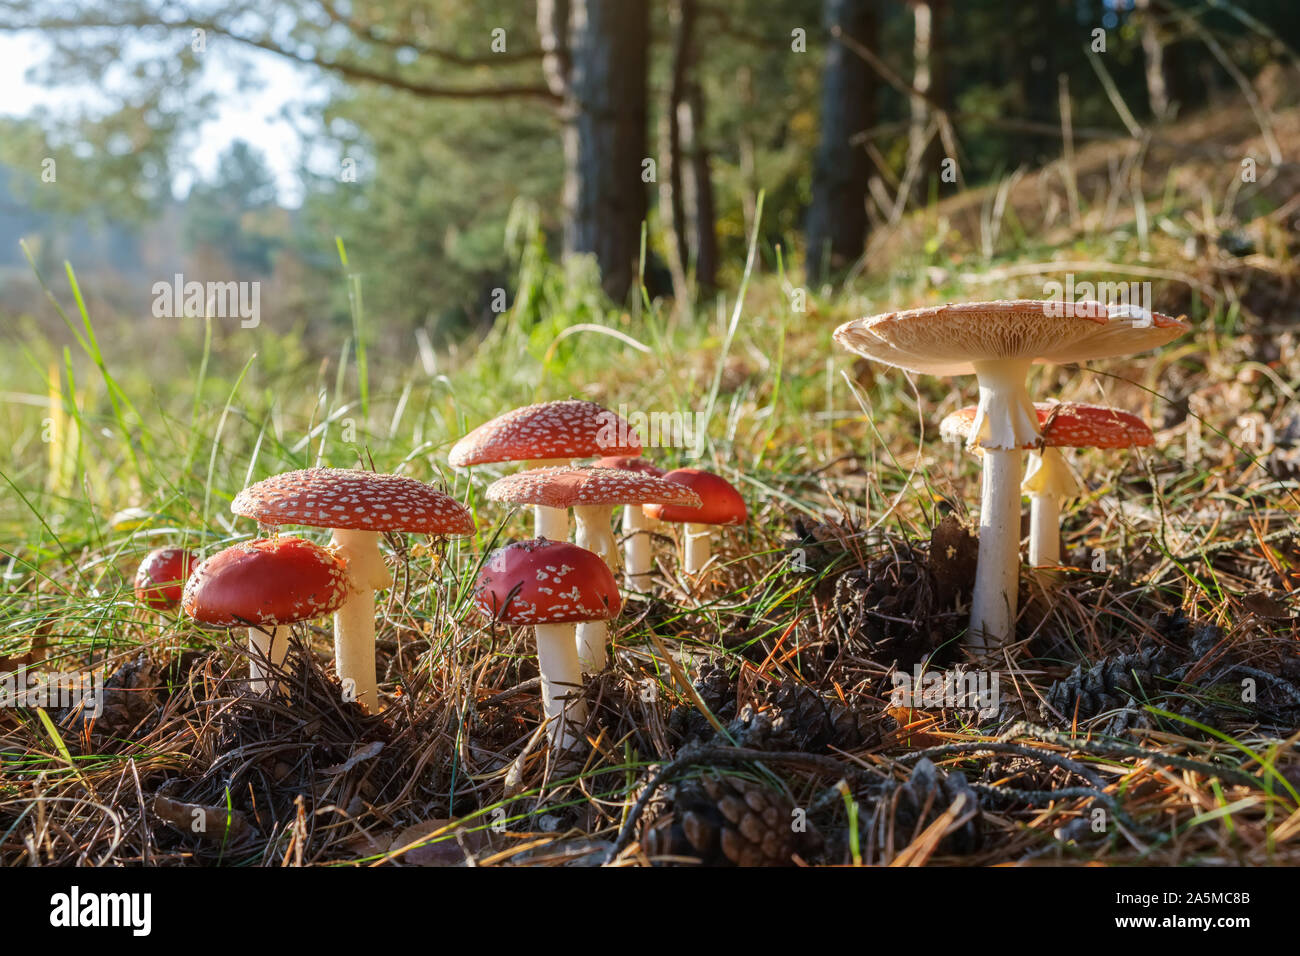 Groupe d'agaric fly rouge des champignons dans la forêt d'automne. Amanita muscaria champignons dans la lumière du soleil. Banque D'Images